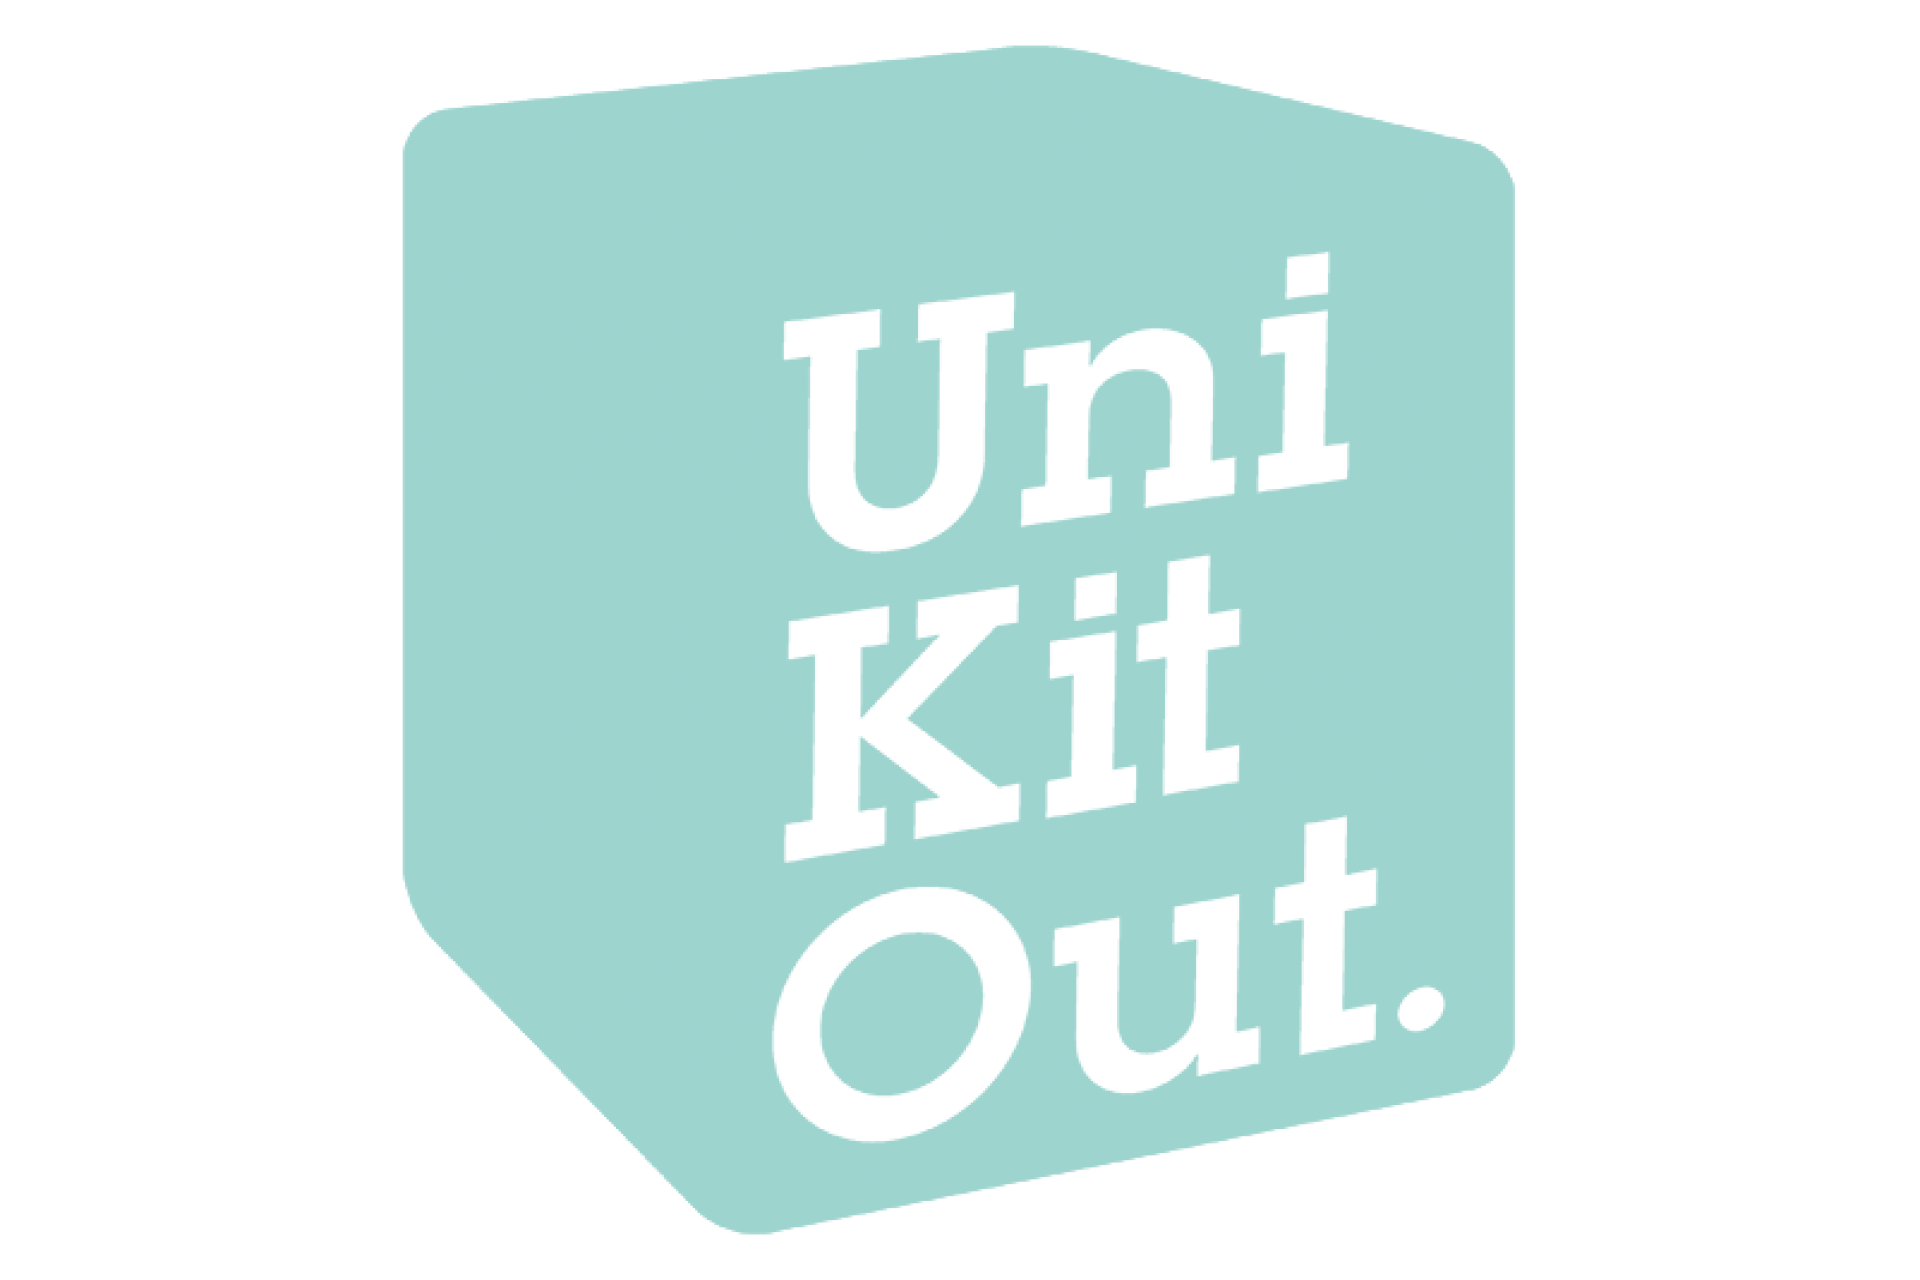 UniKitOut logo